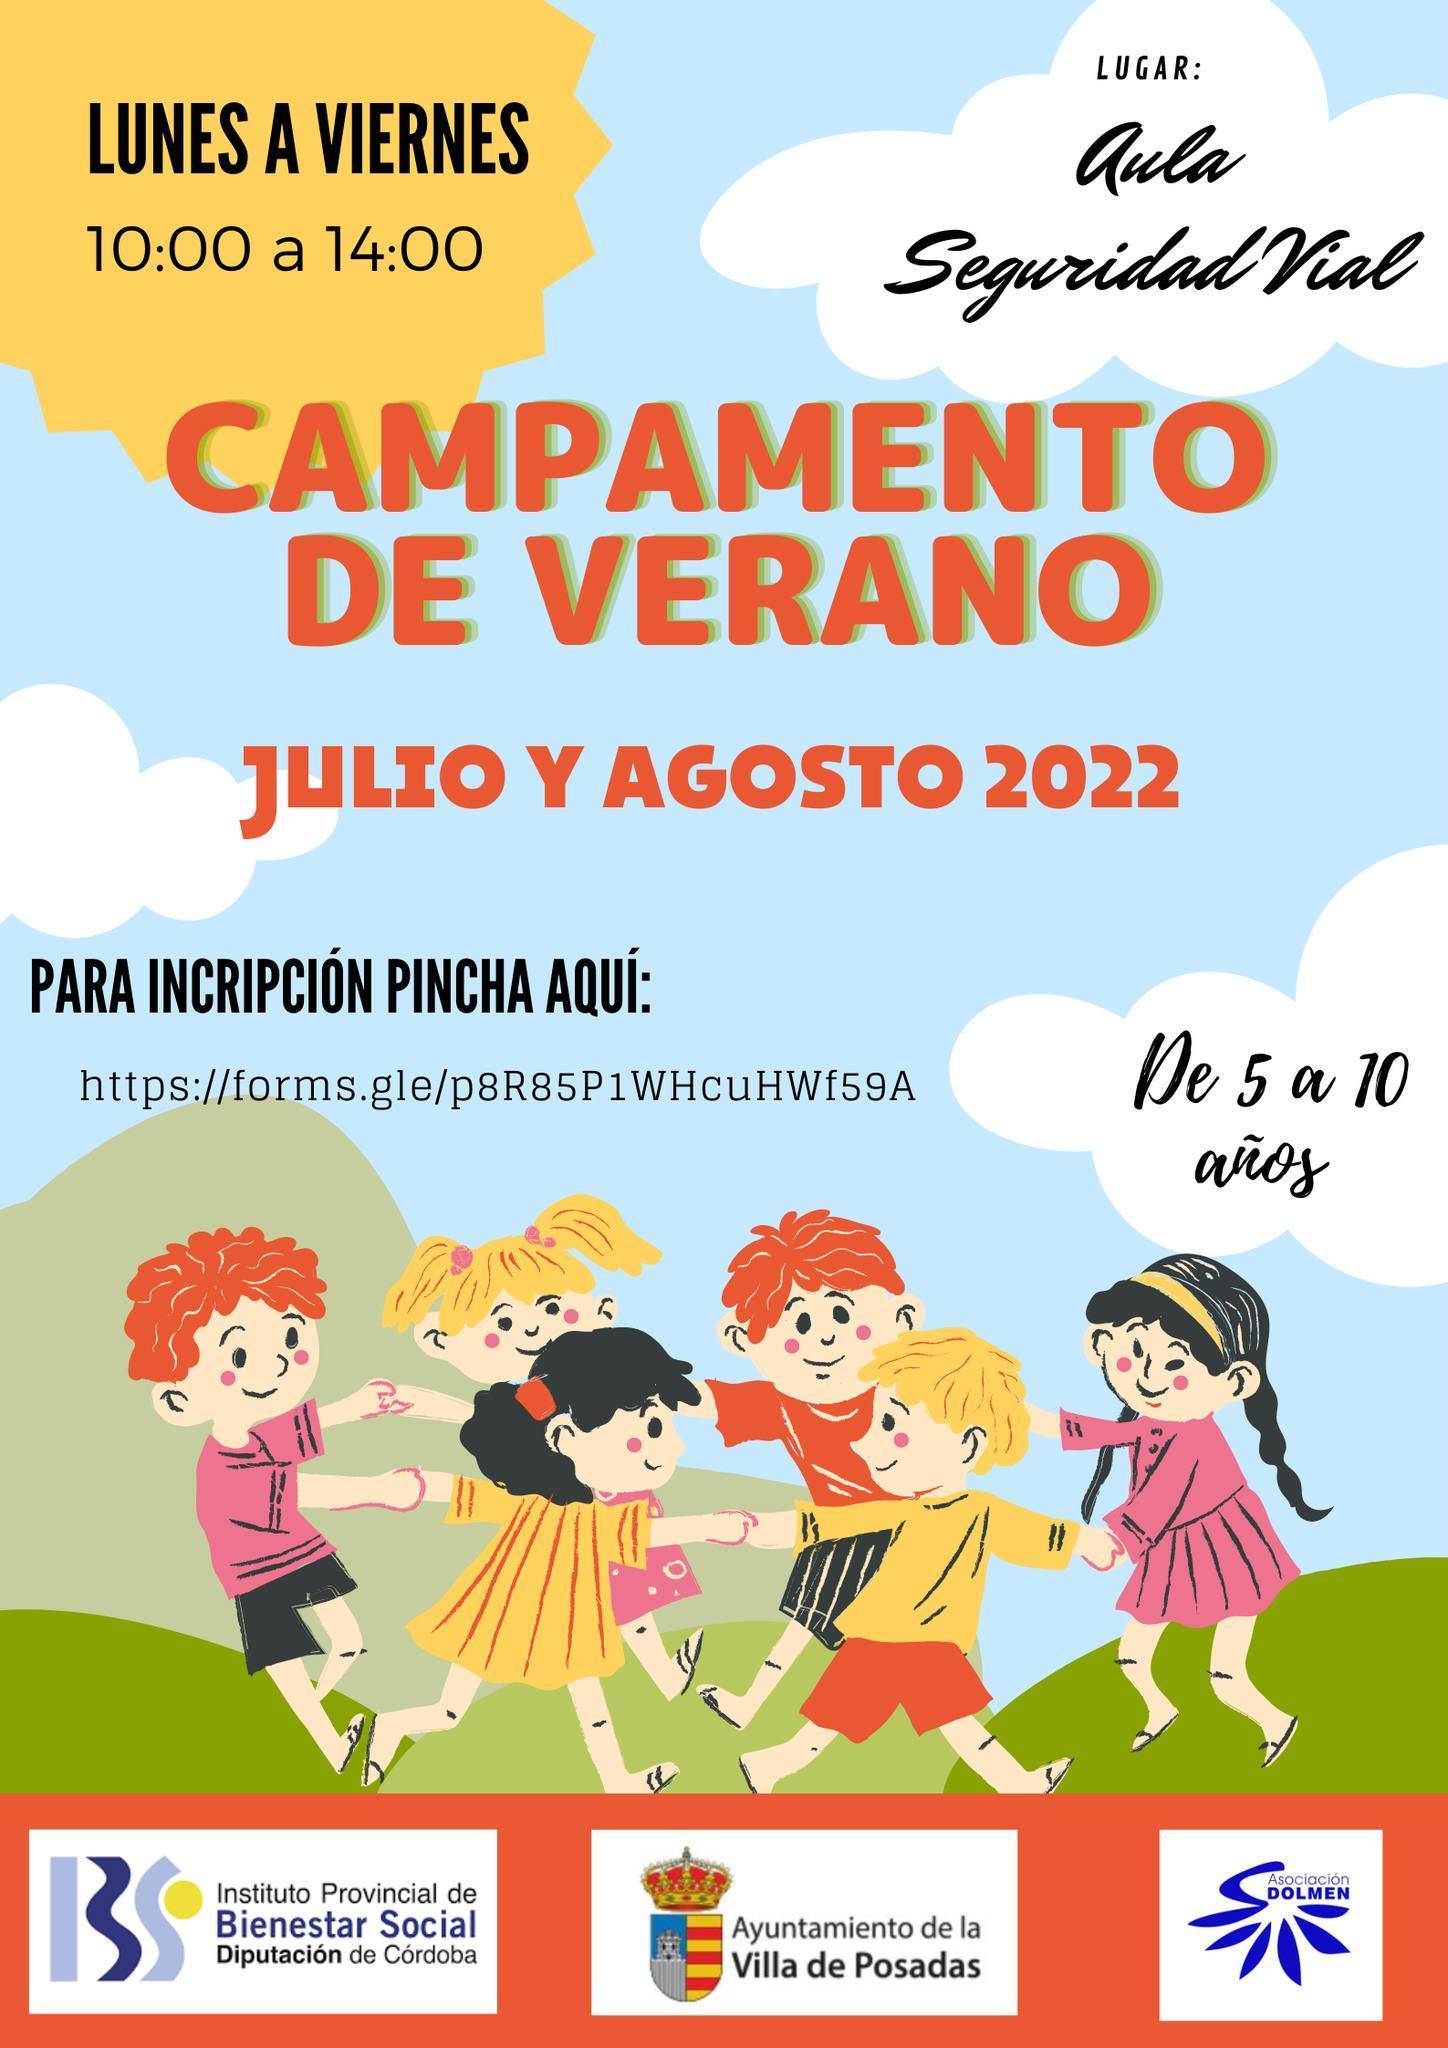 Campamento de verano (2022) - Posadas (Córdoba)